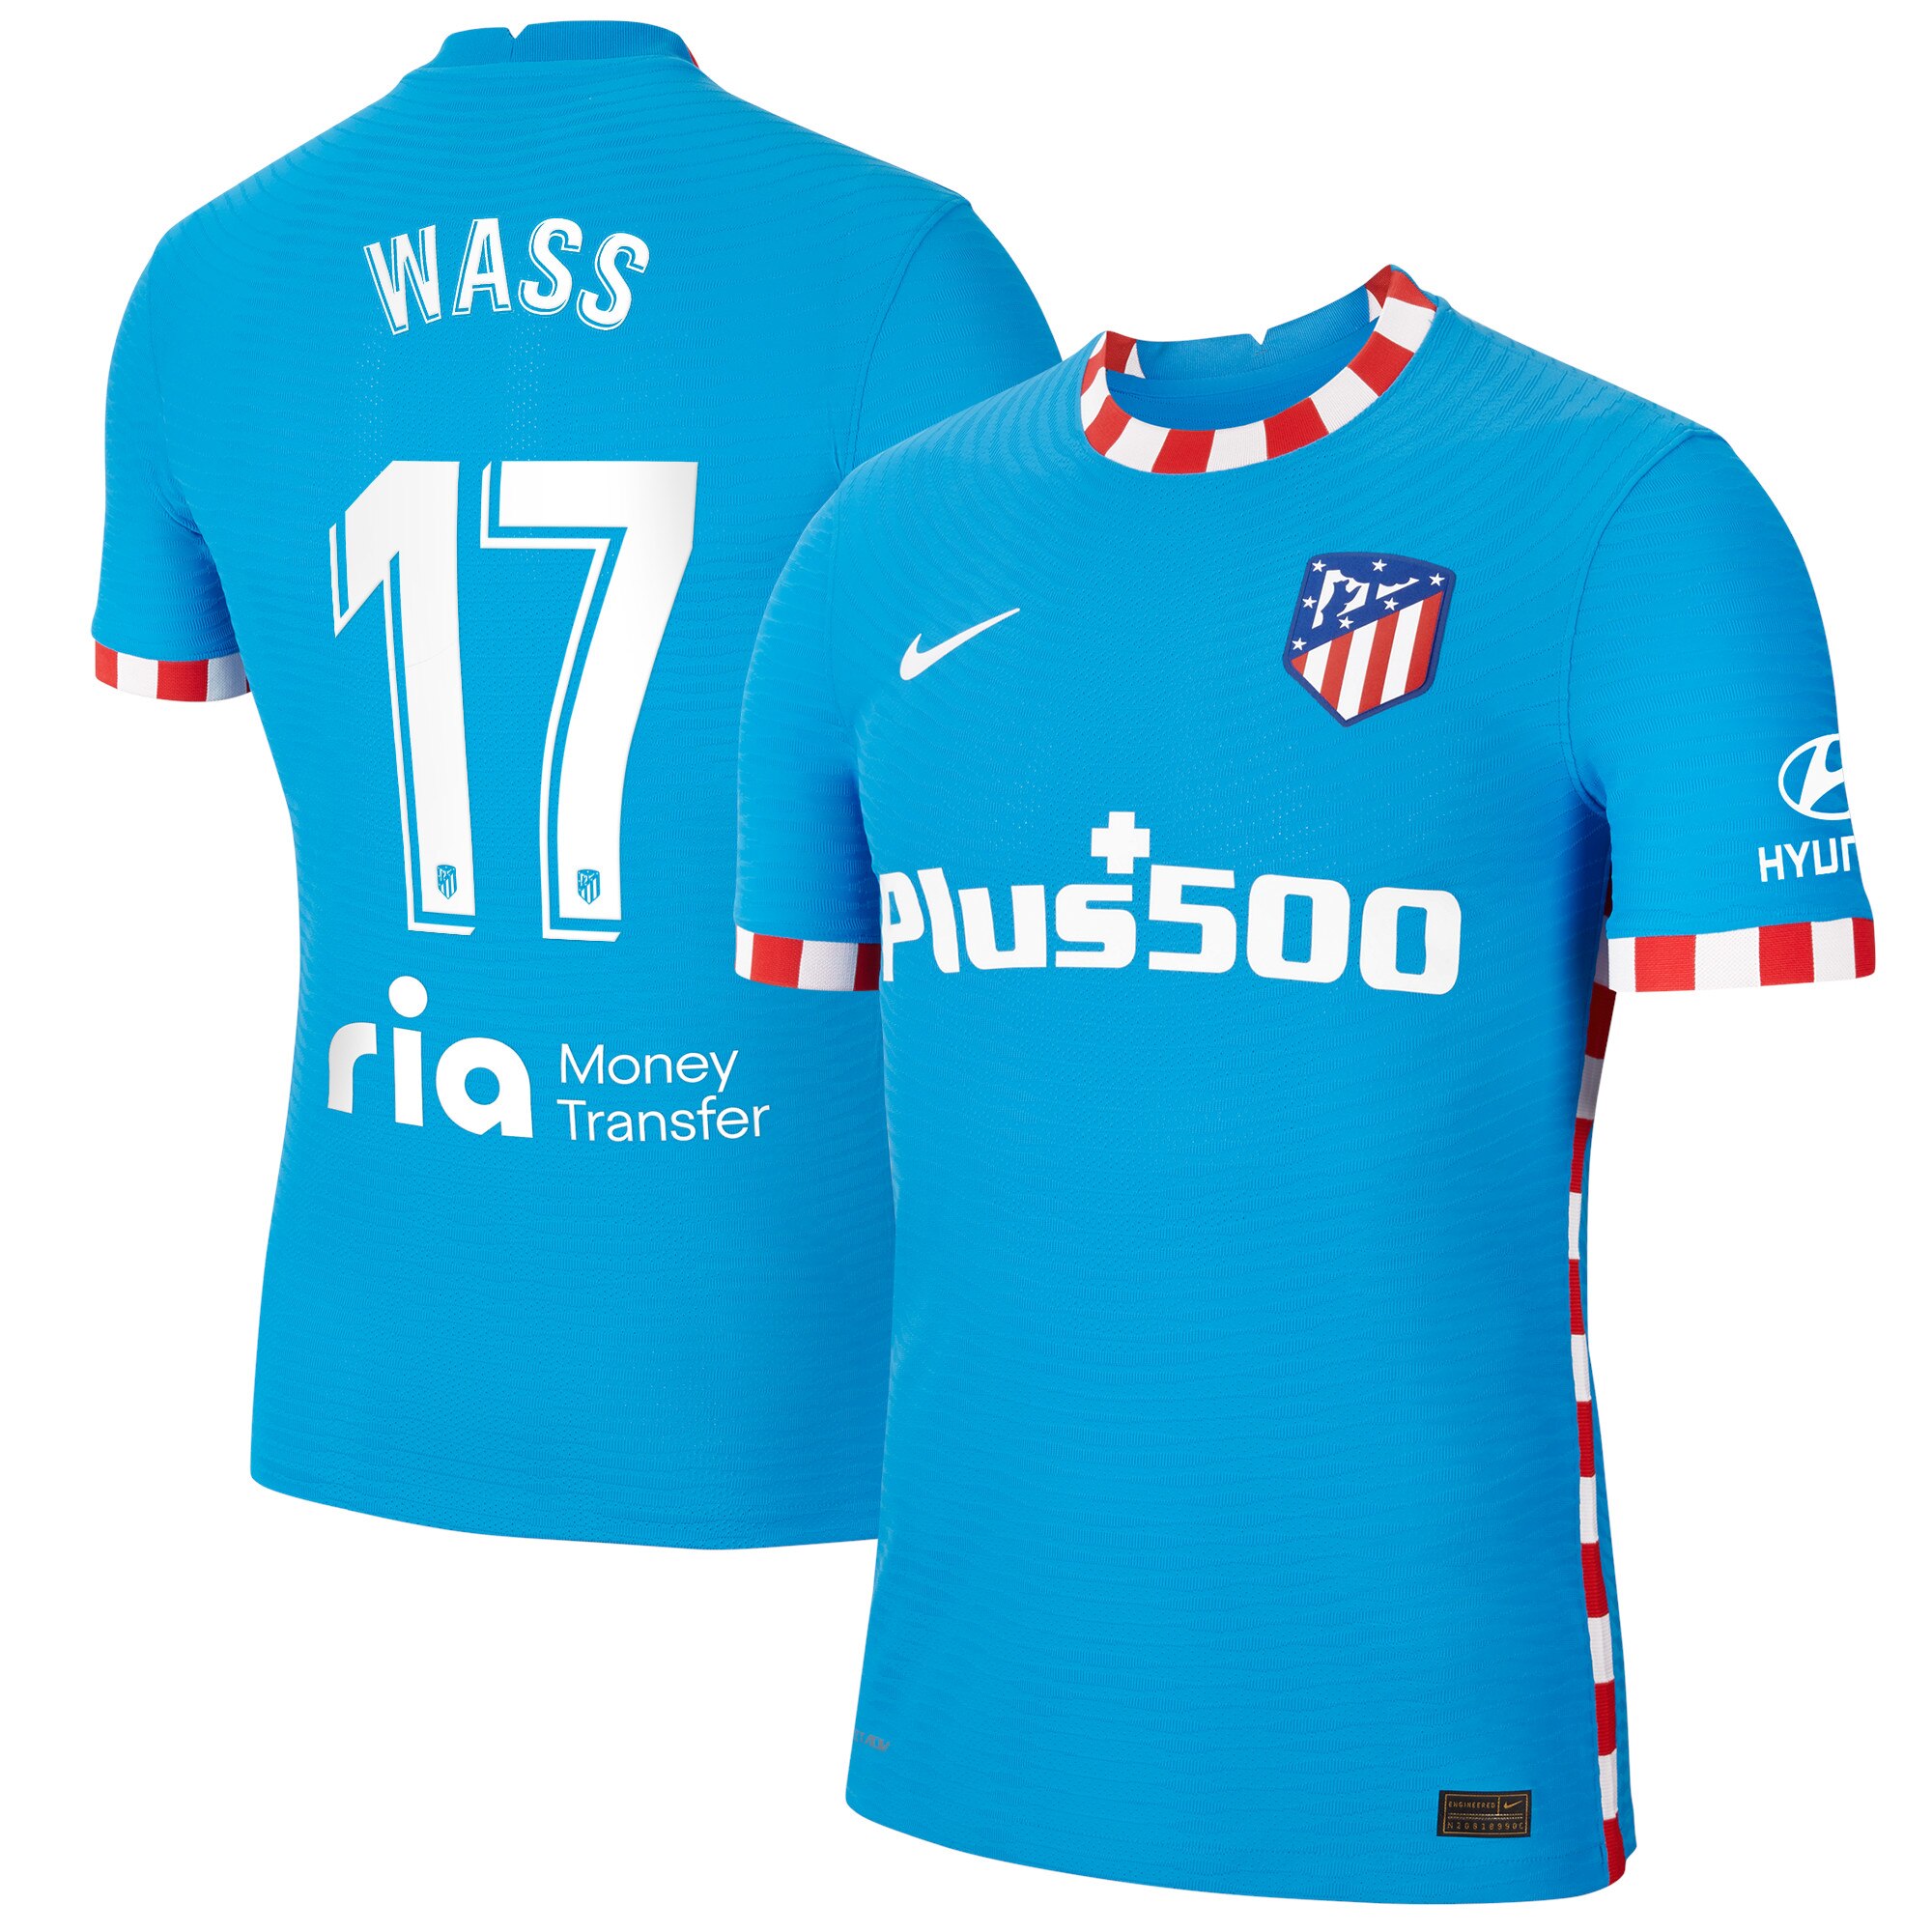 Atlético de Madrid Third Vapor Match Shirt 2021-22 with Wass 17 printing